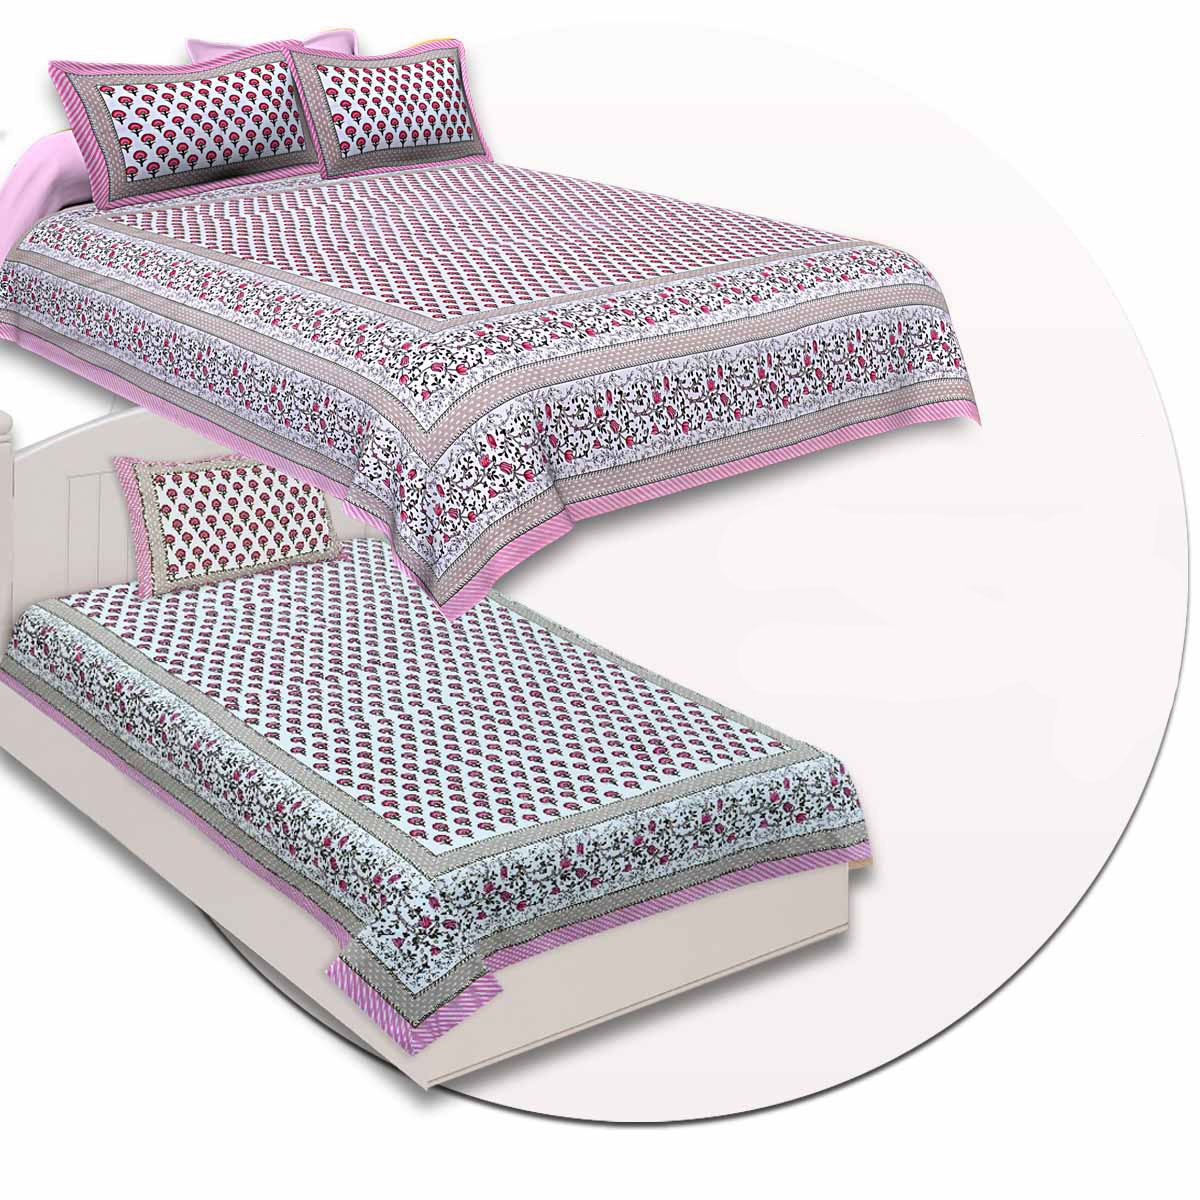 COMBO97 Set of 1 Double Bedsheet and 1 Single Bedsheet With 2+1